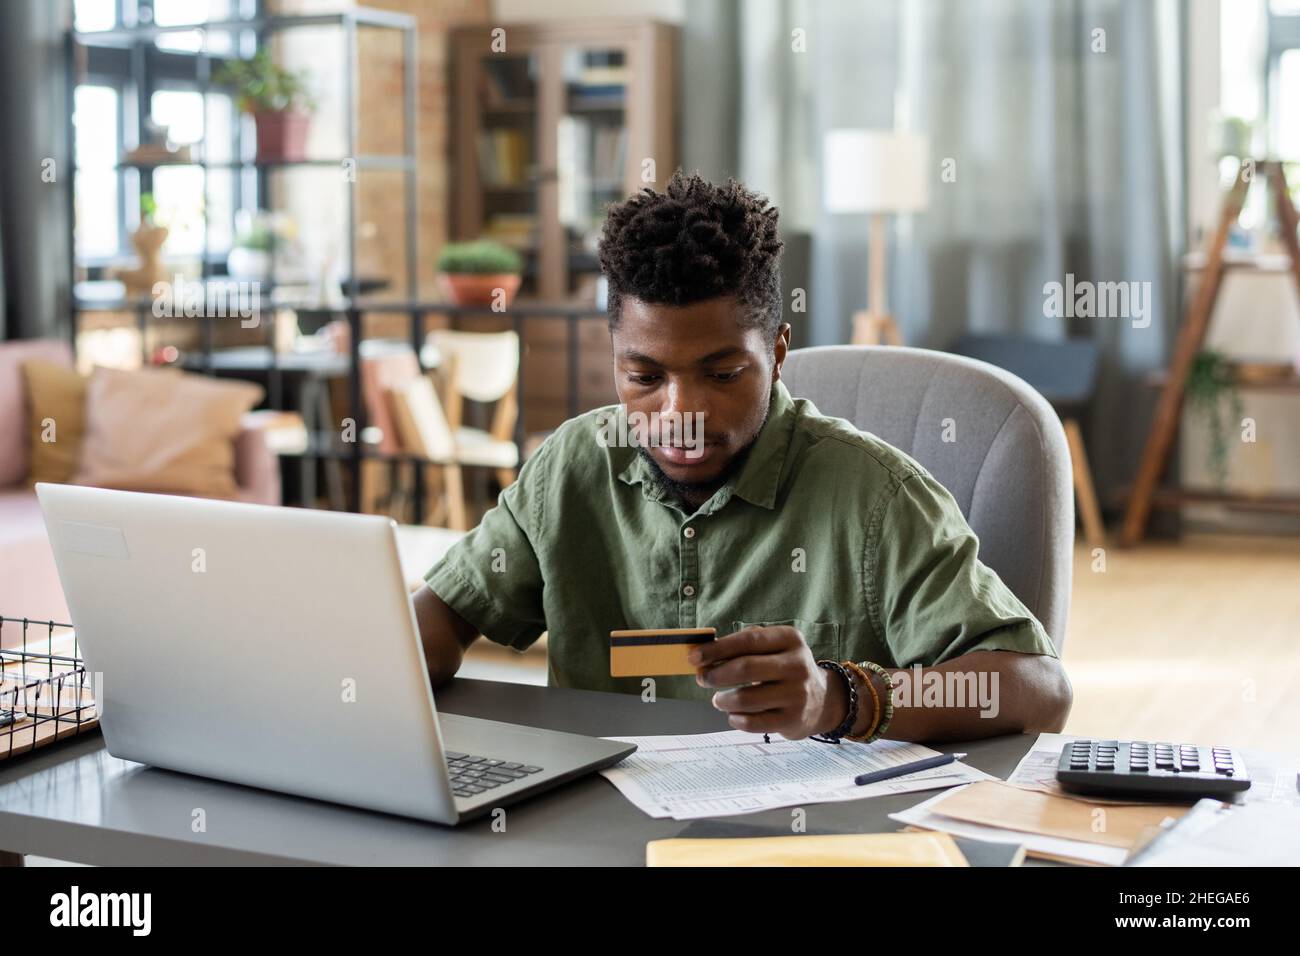 Junger afrikanischer Mann, der die Kreditkarte in der Hand betrachtet, während er vor dem Laptop am Tisch sitzt und für den Online-Kauf bezahlen will Stockfoto